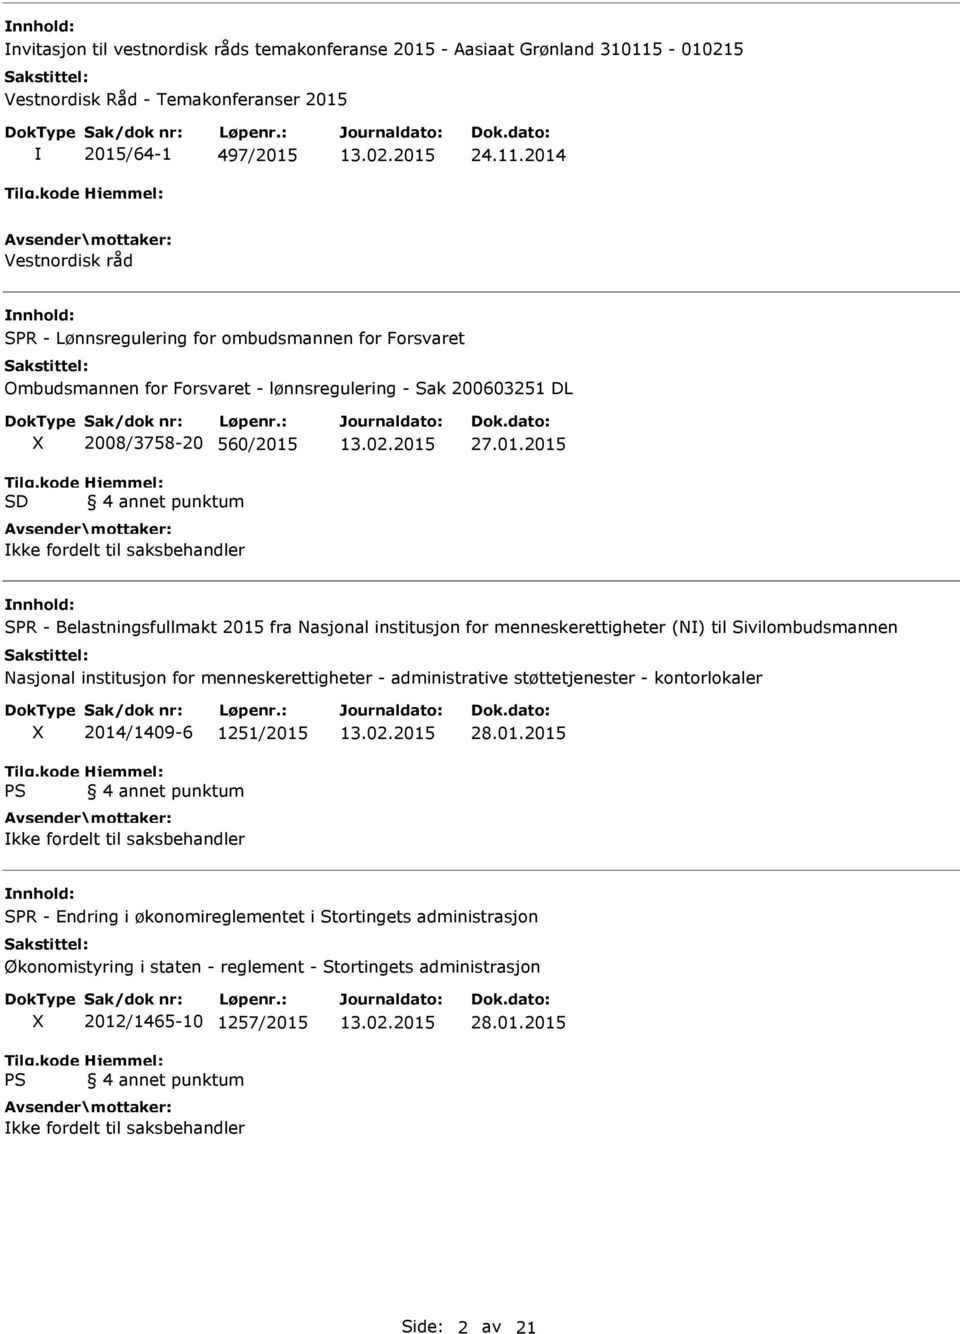 2014 Vestnordisk råd SPR - Lønnsregulering for ombudsmannen for Forsvaret Ombudsmannen for Forsvaret - lønnsregulering - Sak 200603251 DL 2008/3758-20 560/2015 4 annet punktum kke fordelt til